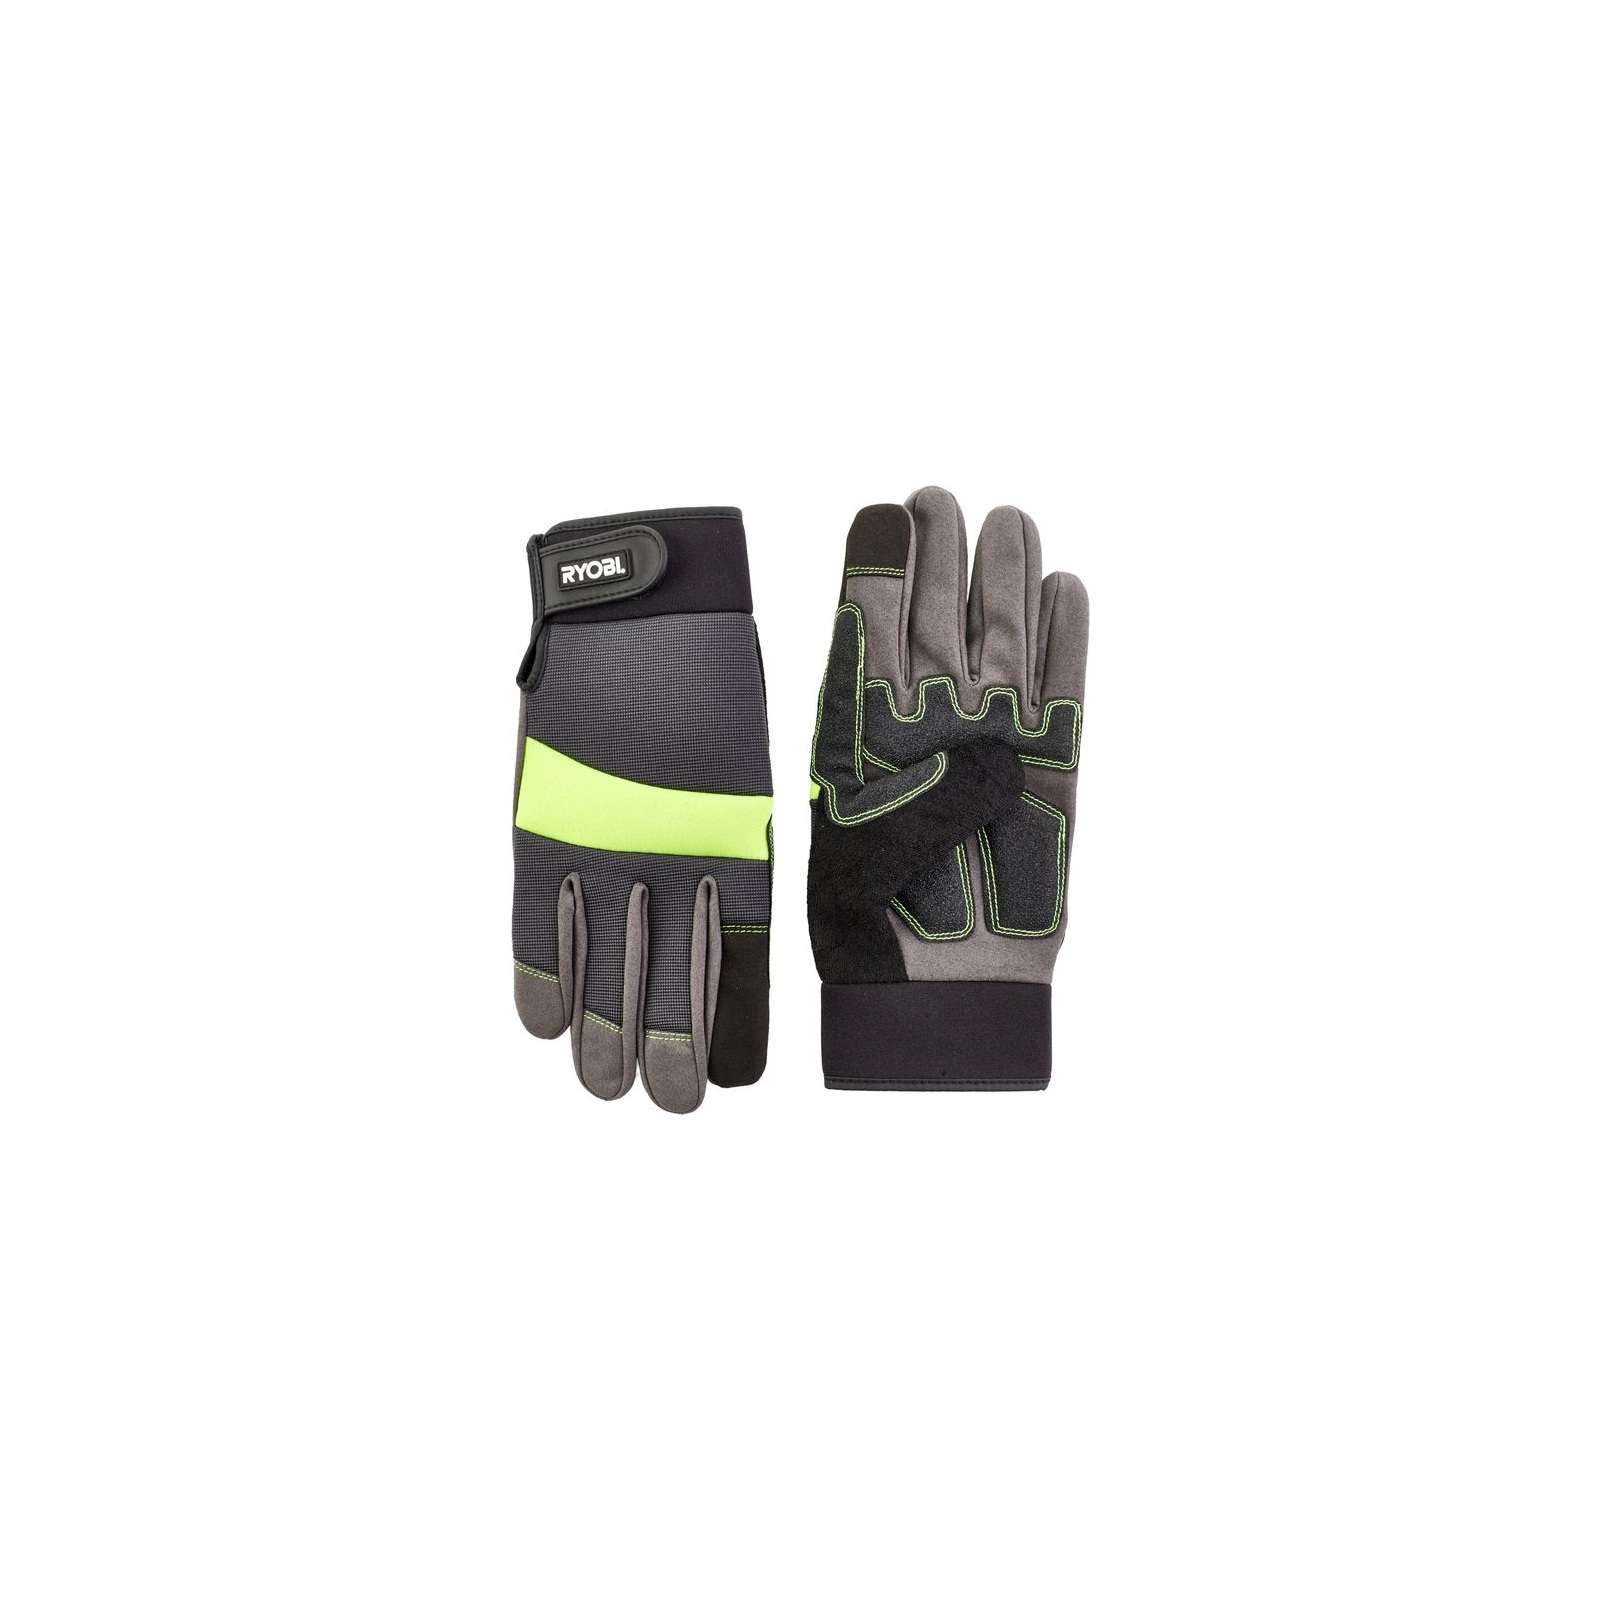 Захисні рукавиці Ryobi RAC811M, вологозахист, р. М (5132002992)